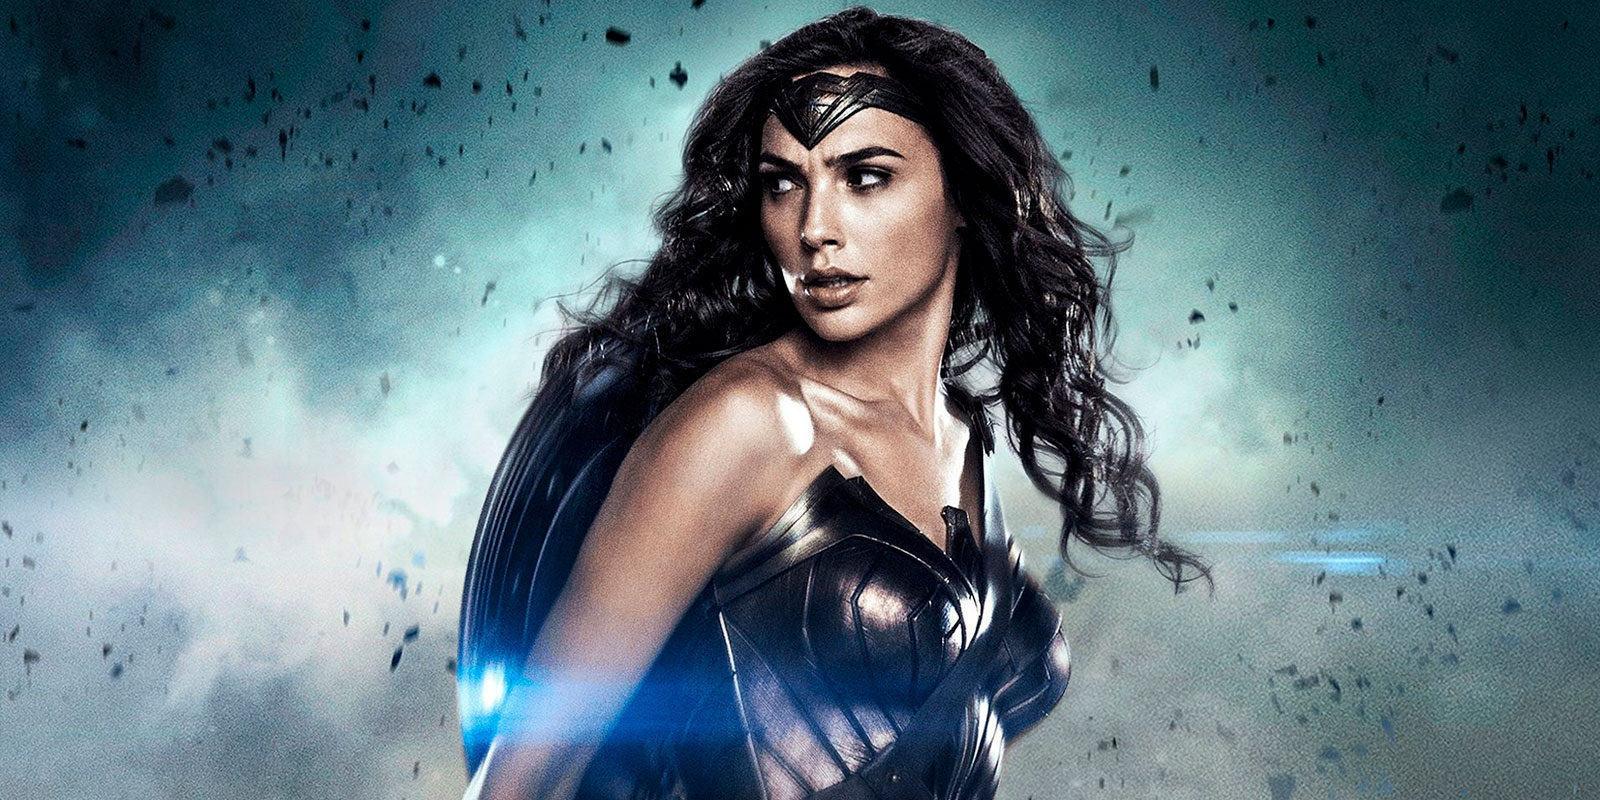 BoxOffice pronostica una baja recaudación para 'Wonder Woman'